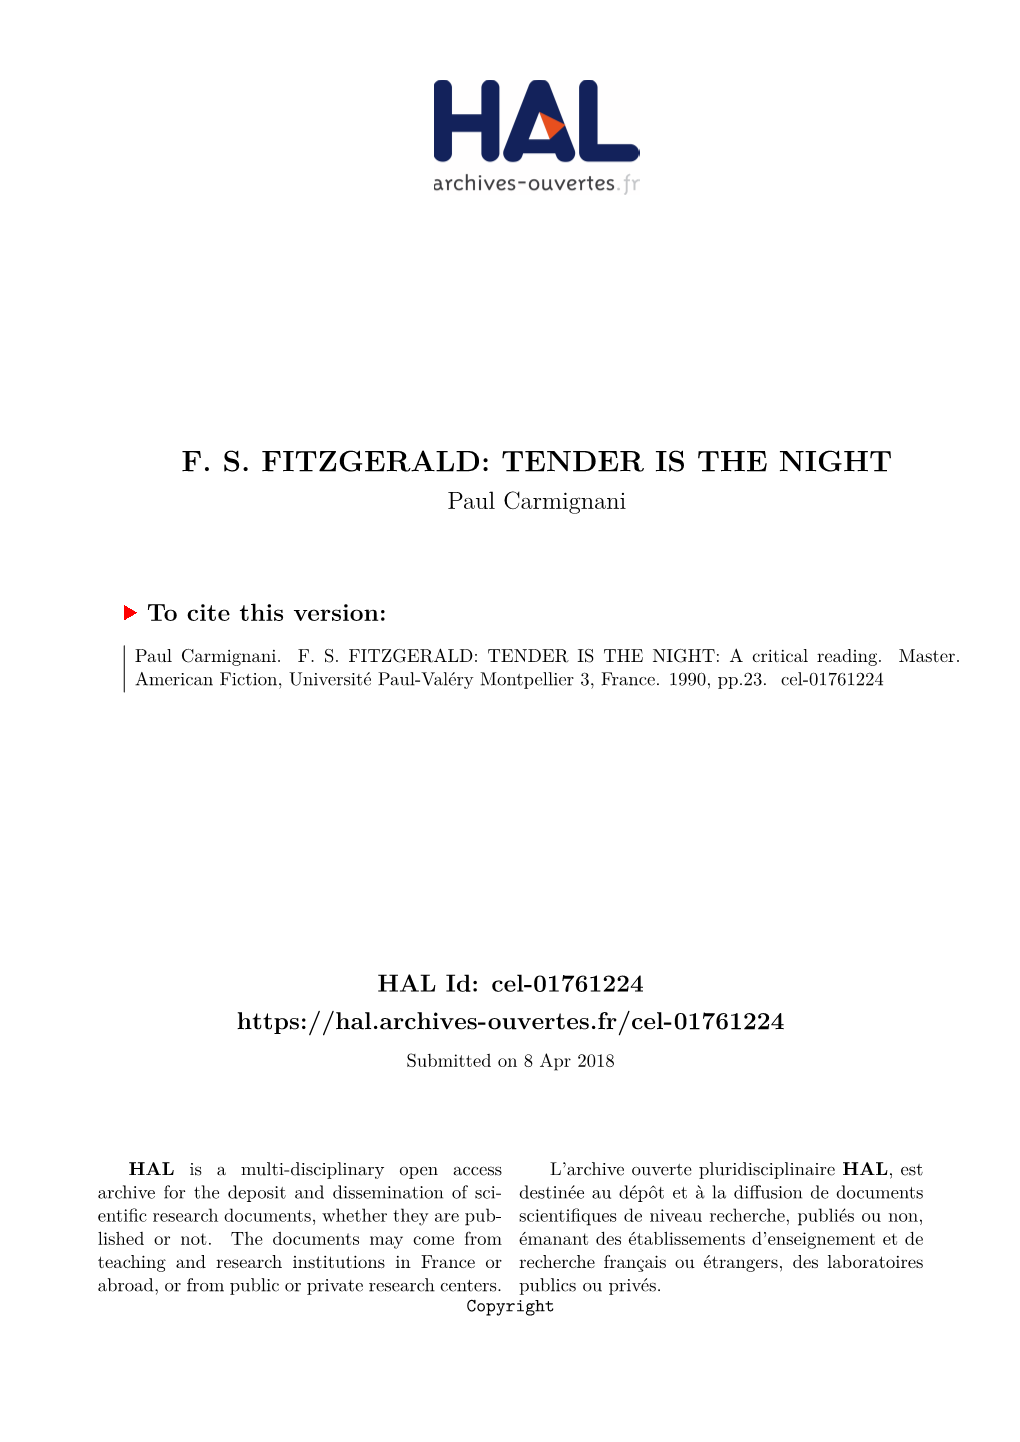 TENDER IS the NIGHT Paul Carmignani